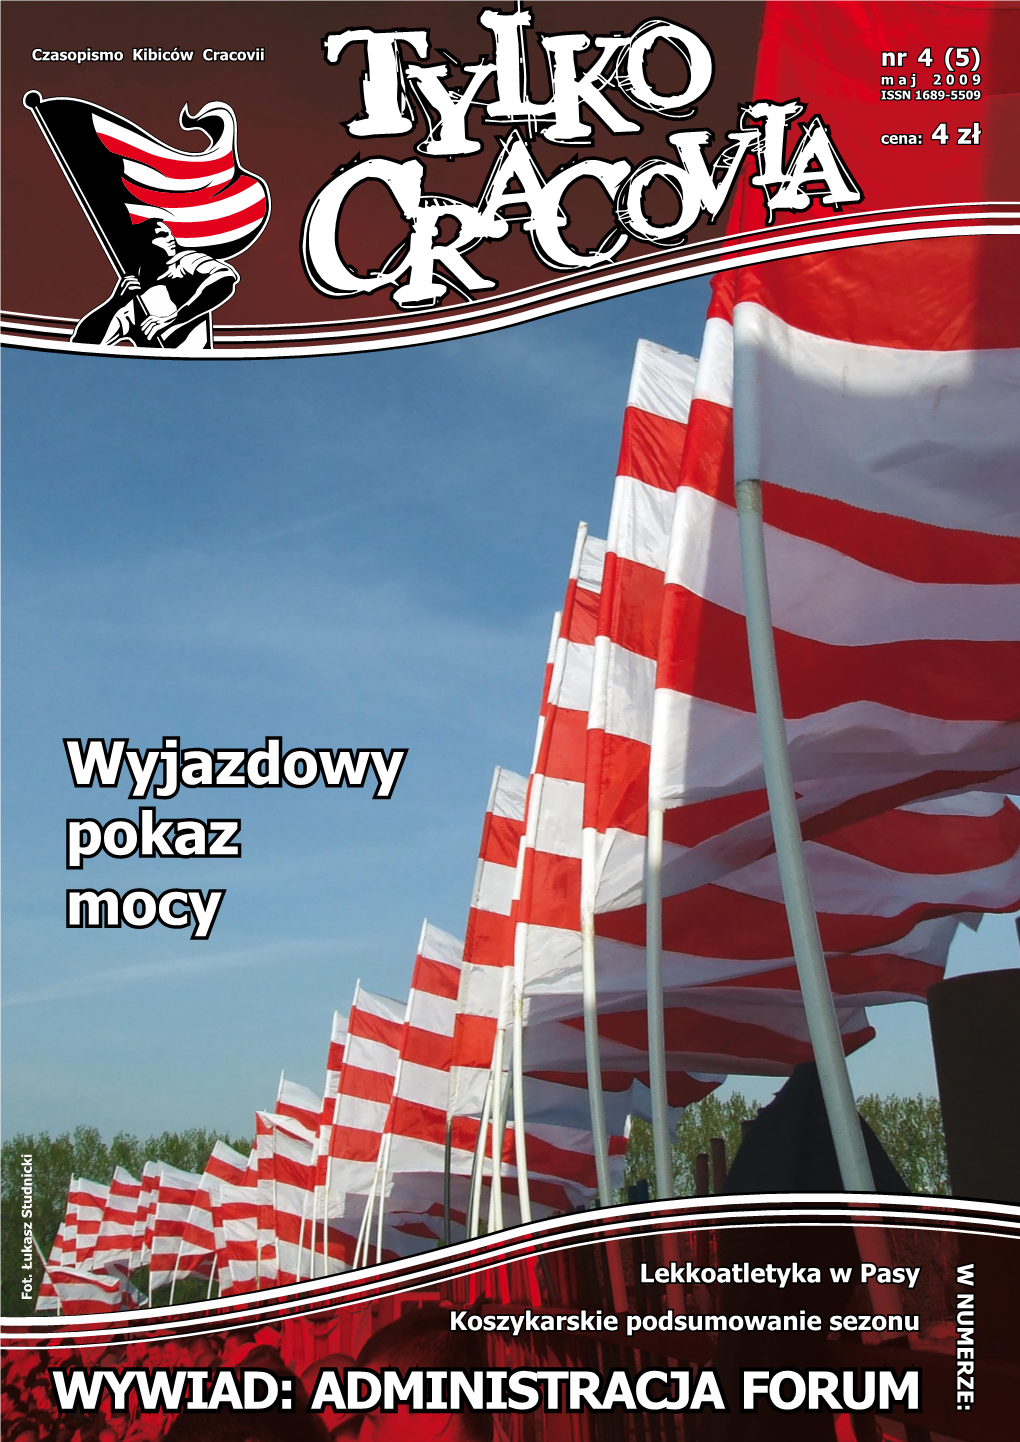 Tylko Cracovia”!